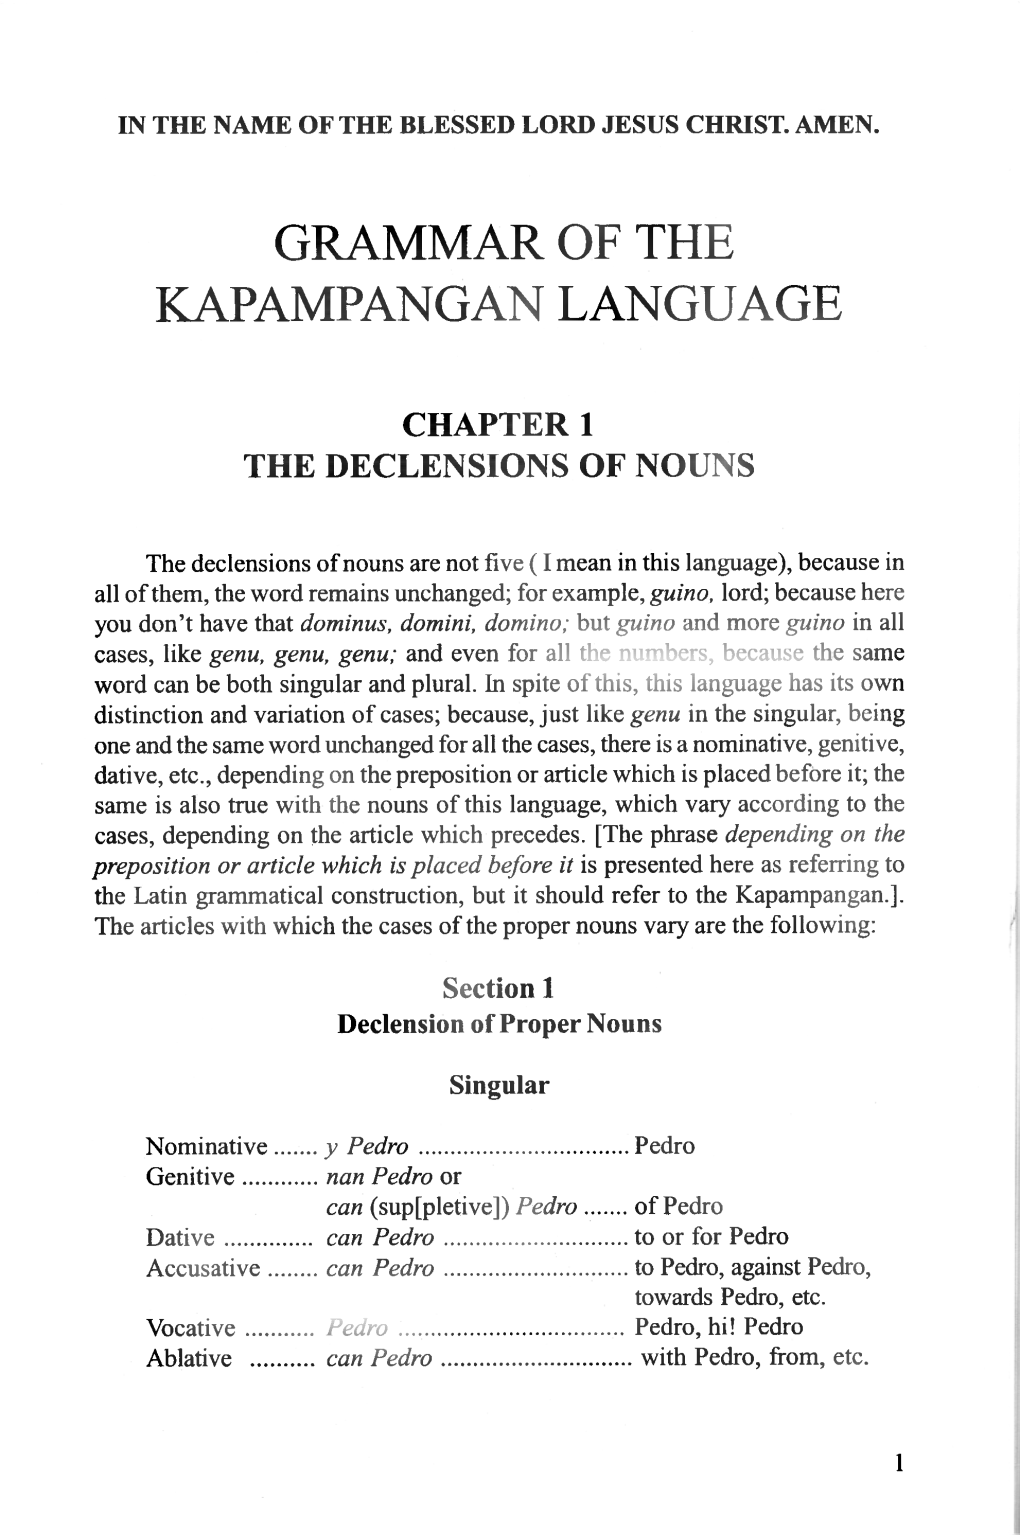 Grammar of the Kapampangan Language